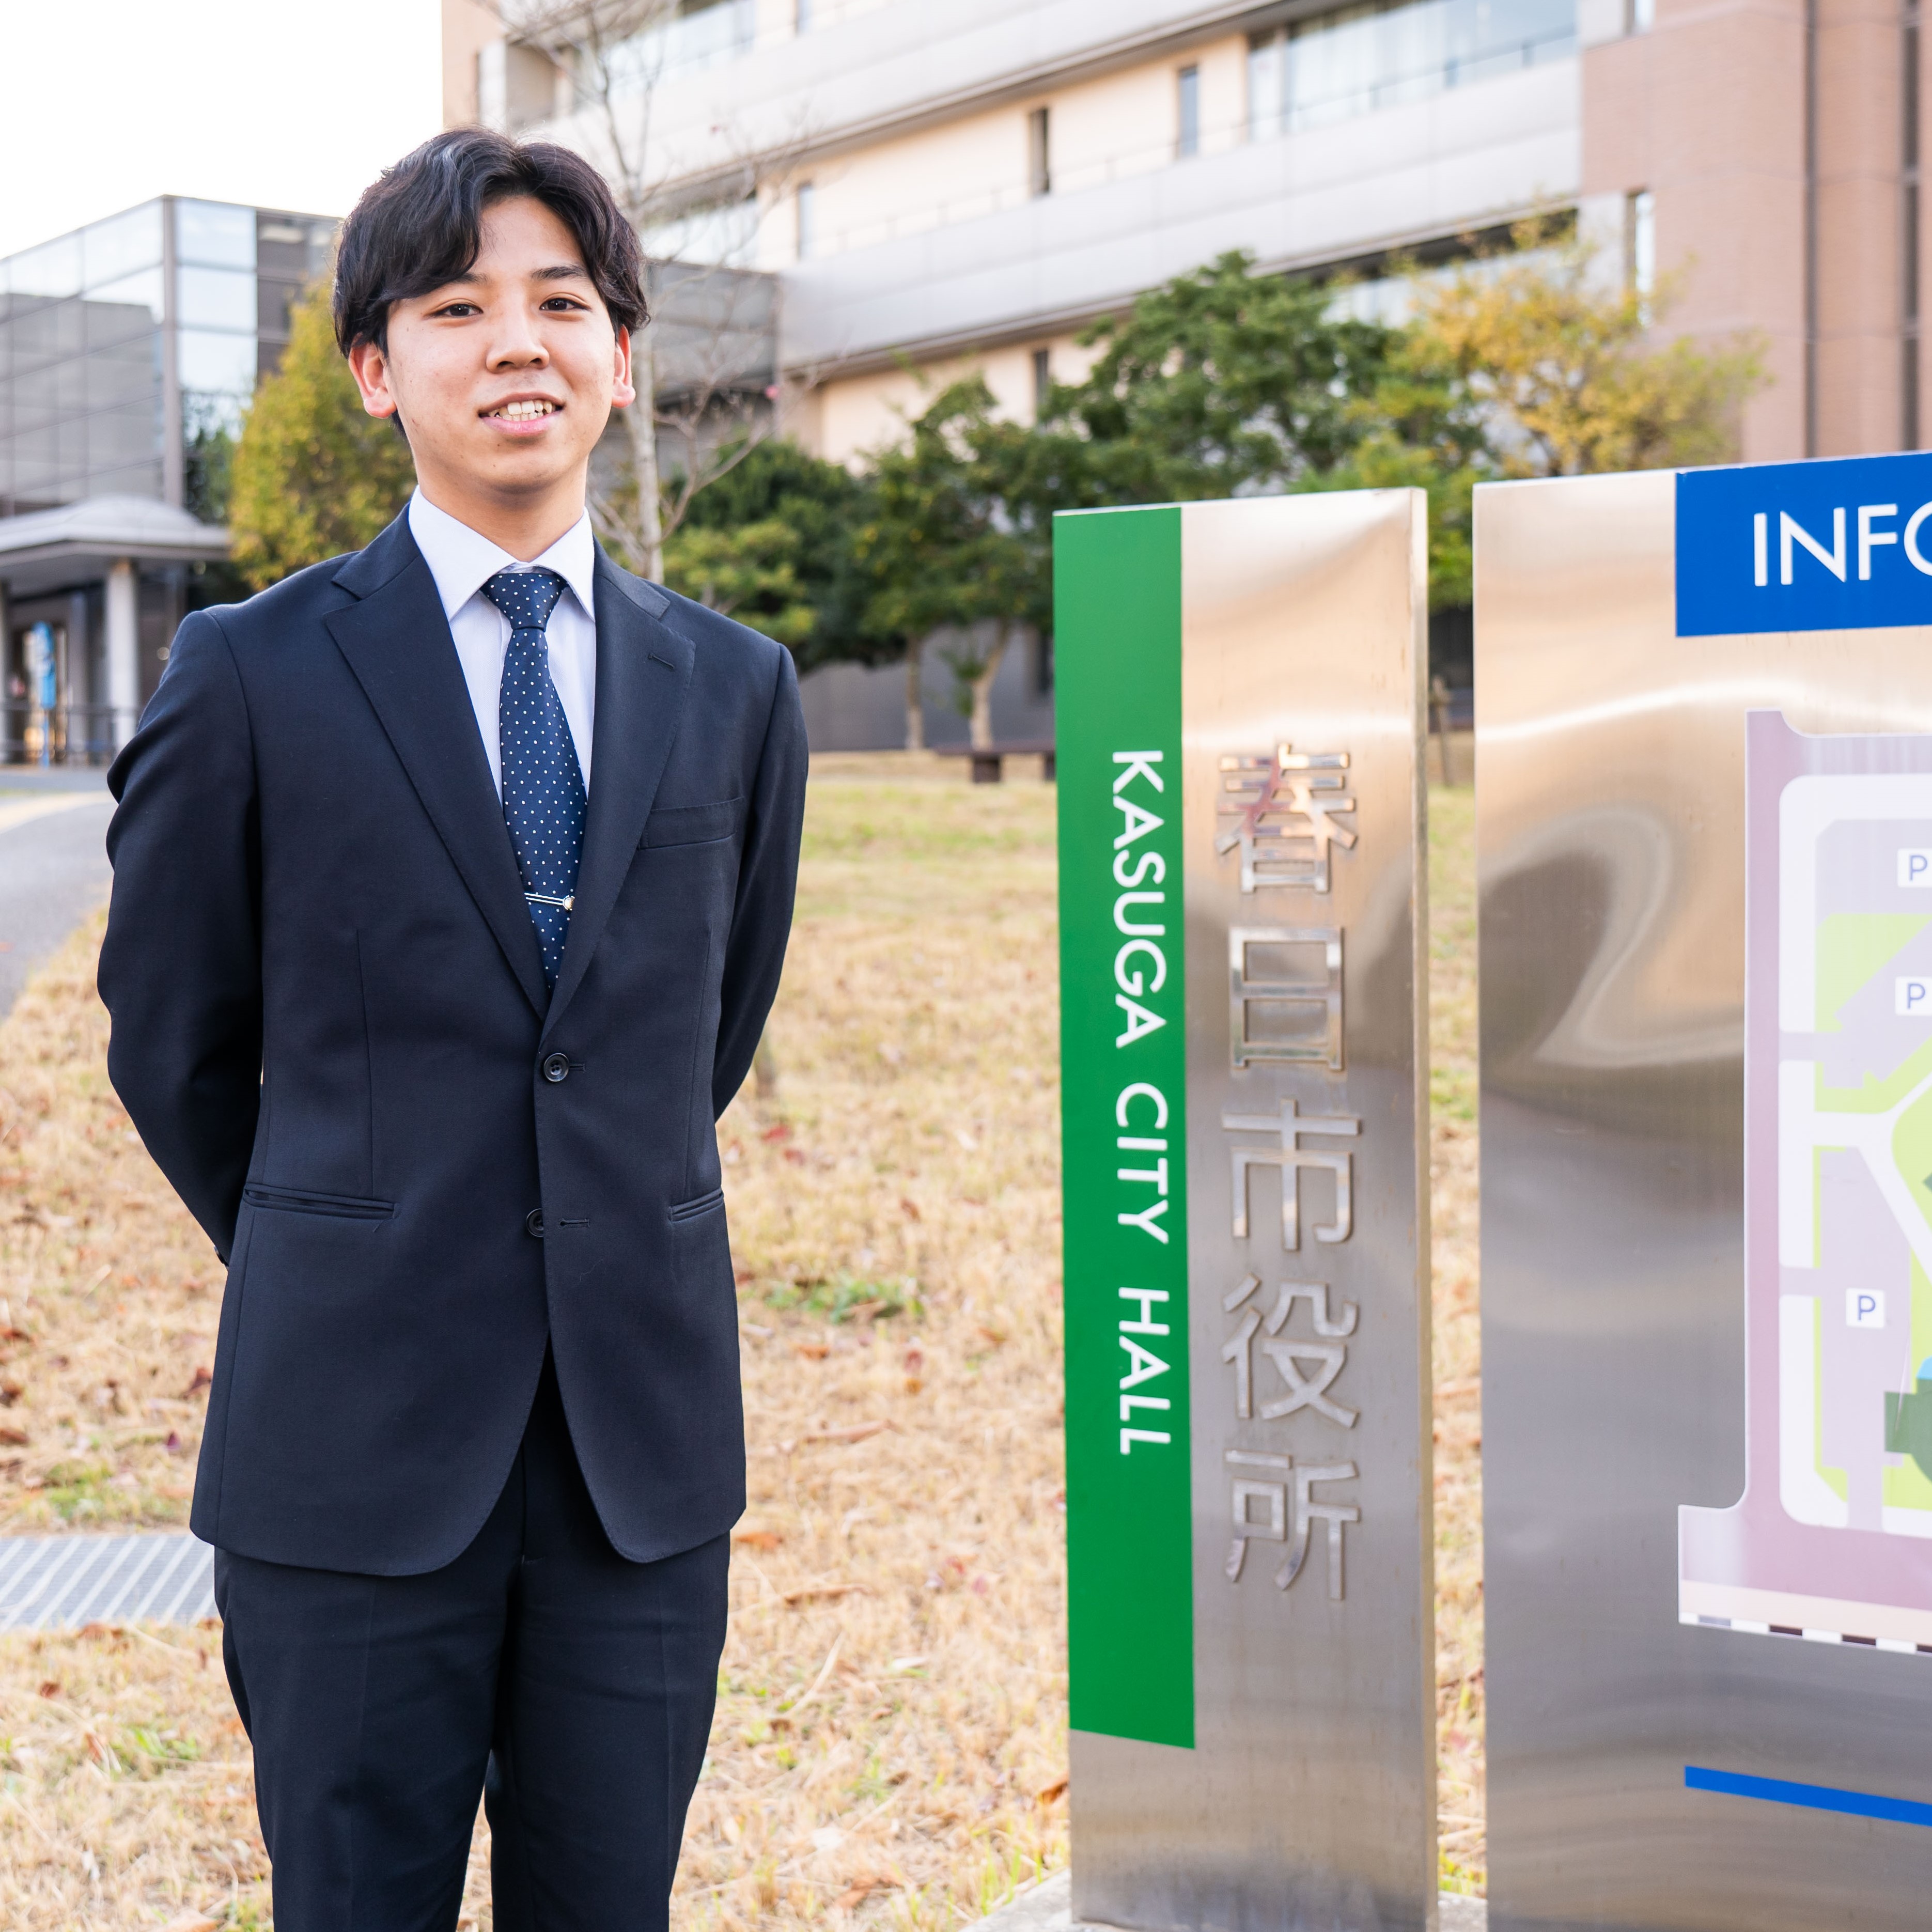 専門学校 福岡カレッジ・オブ・ビジネスのオープンキャンパス